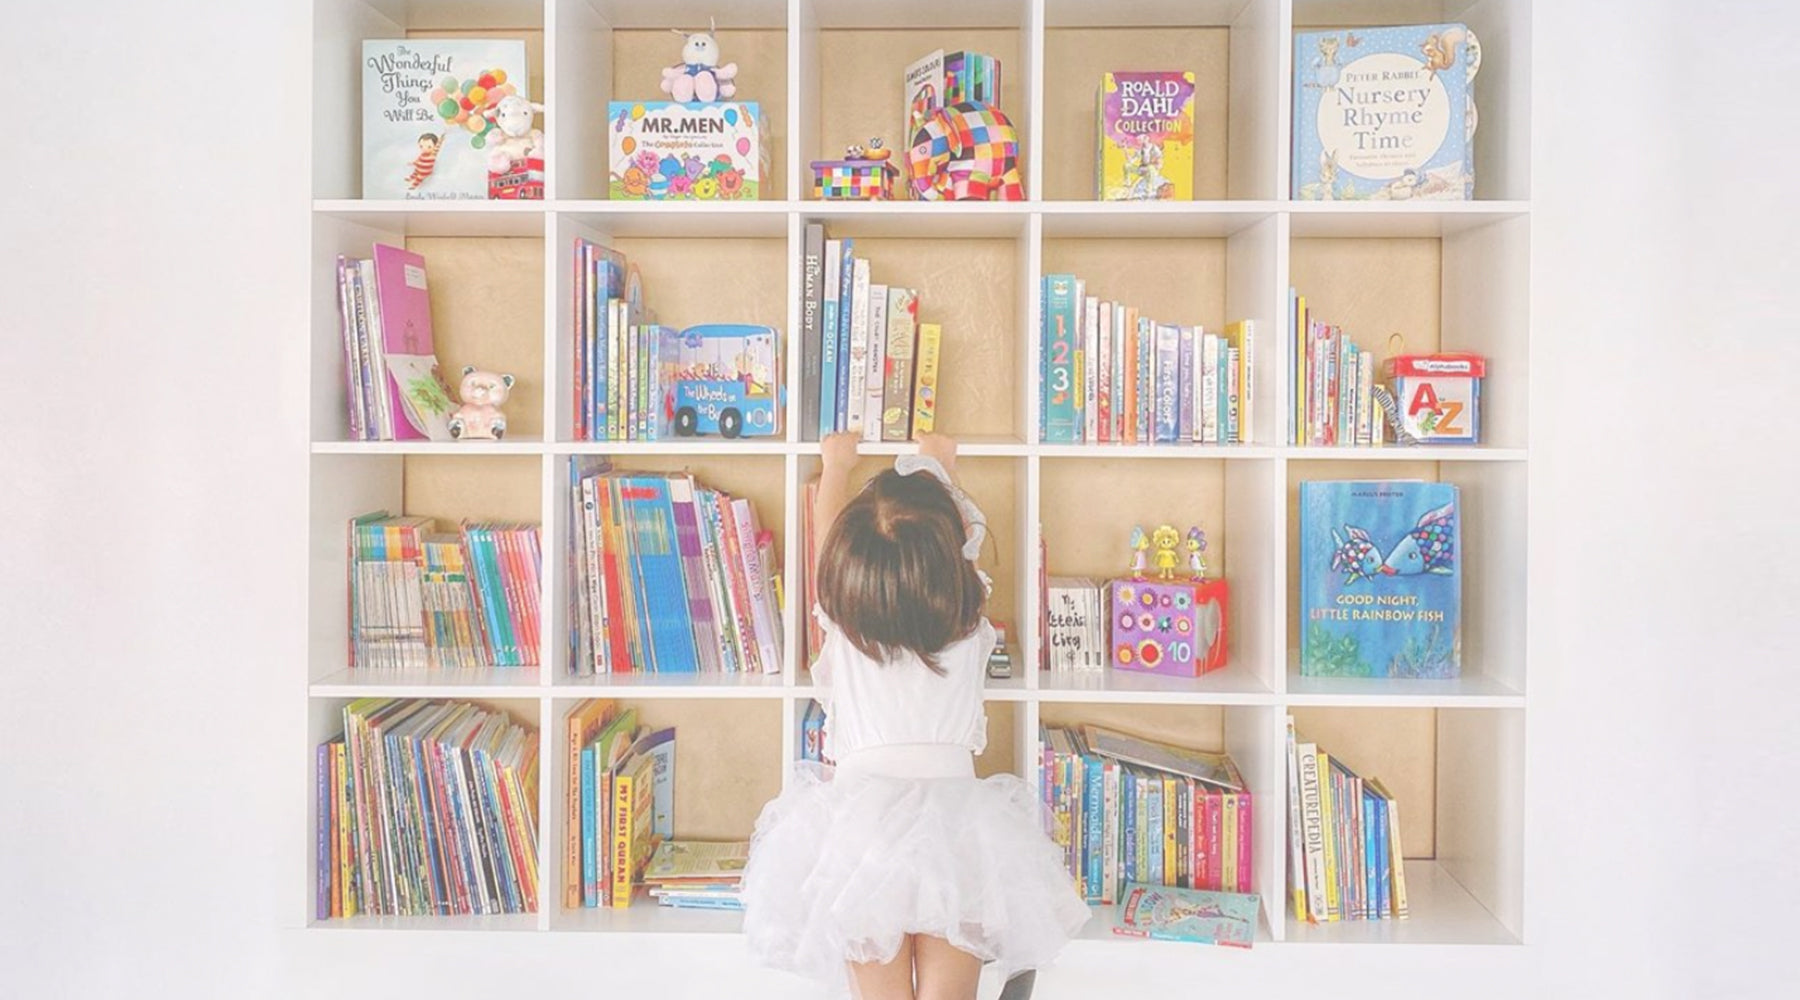 Little girl in white dress reaching for books in her bookshelf